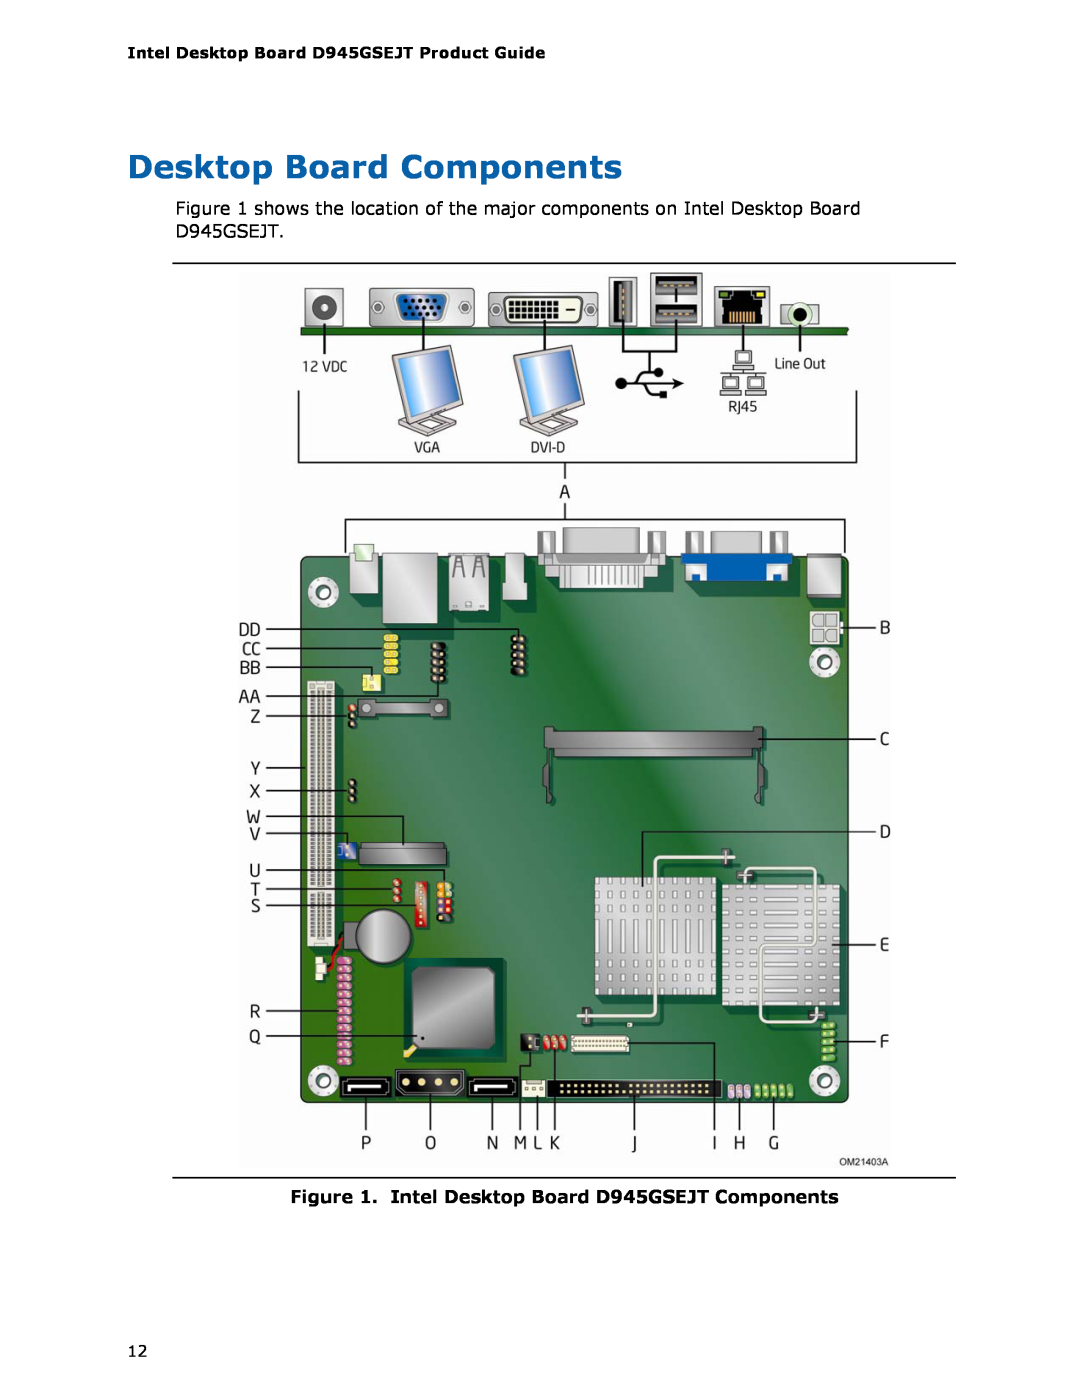 Intel D945GSEJT manual Desktop Board Components 